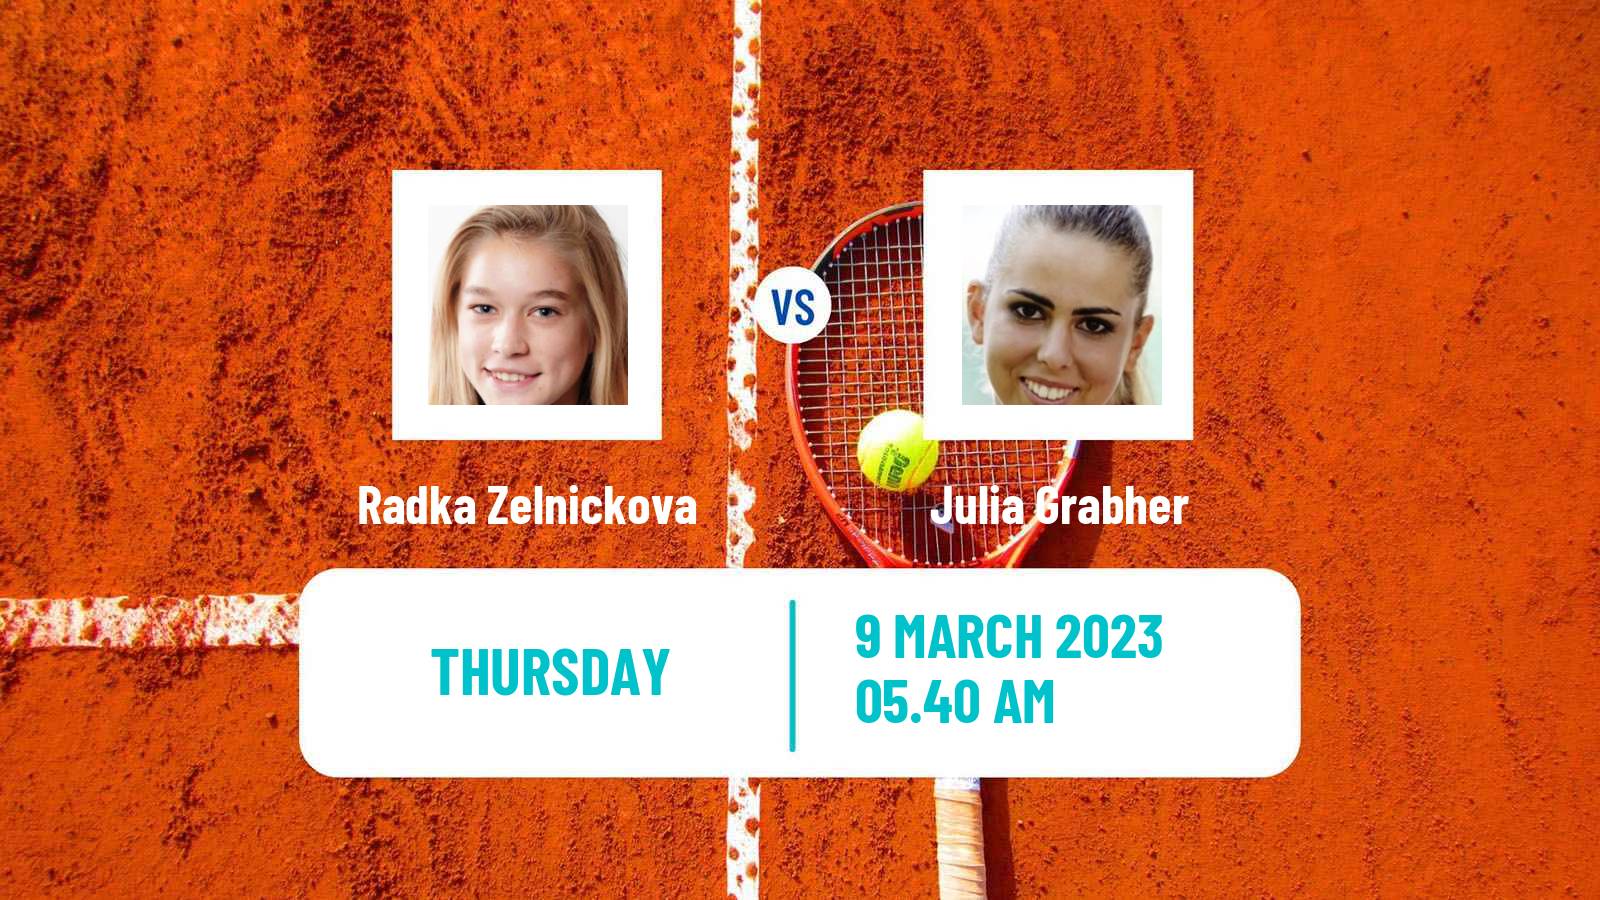 Tennis ITF Tournaments Radka Zelnickova - Julia Grabher